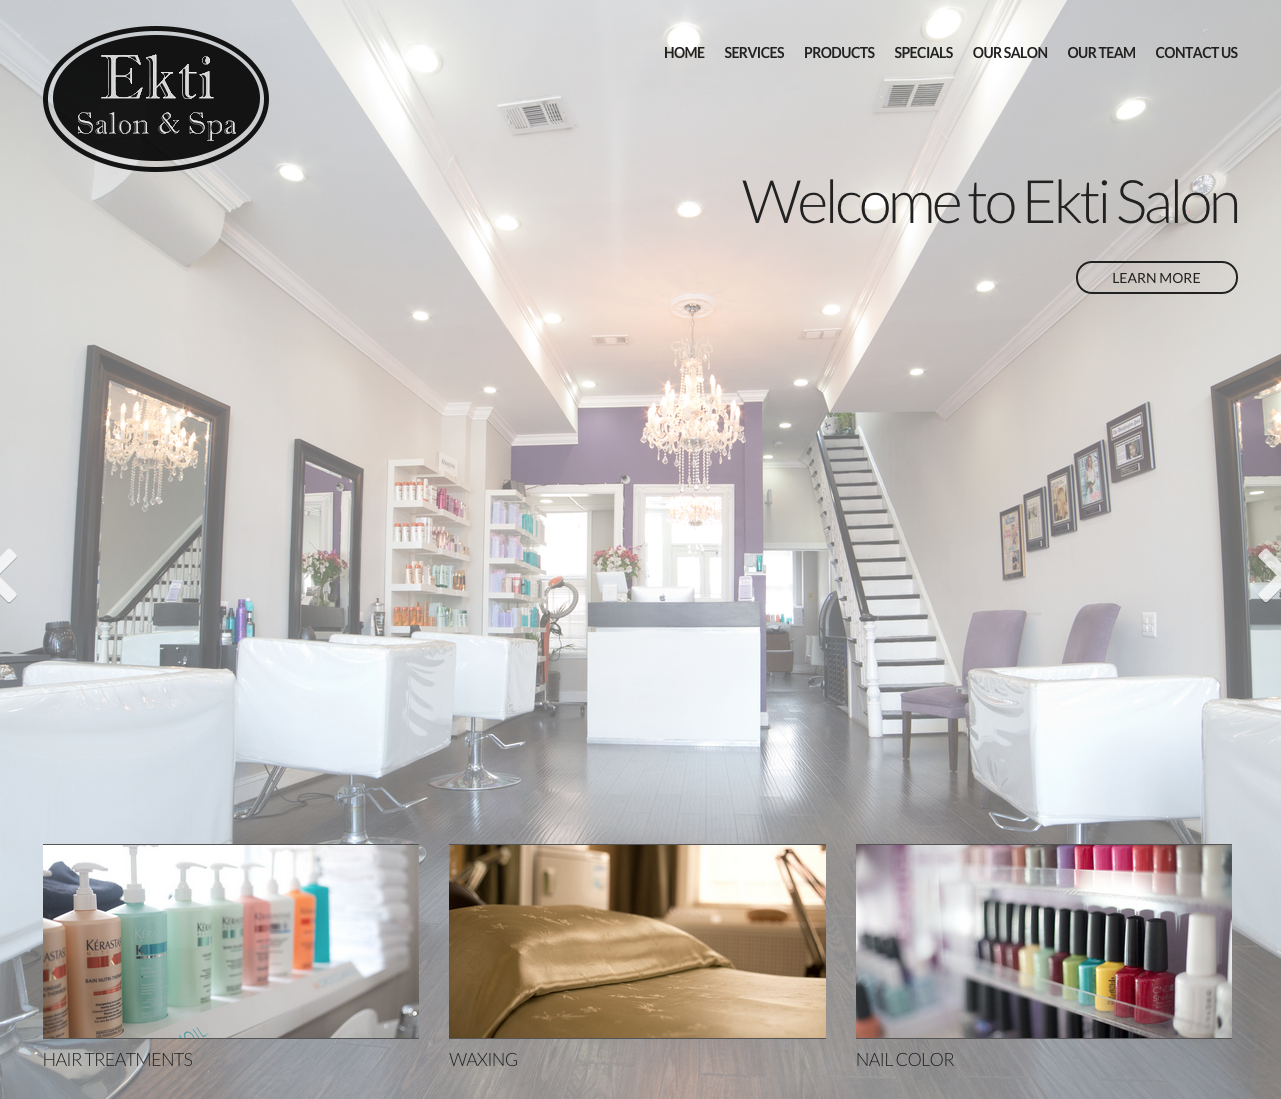 Ekti Salon Spa Website